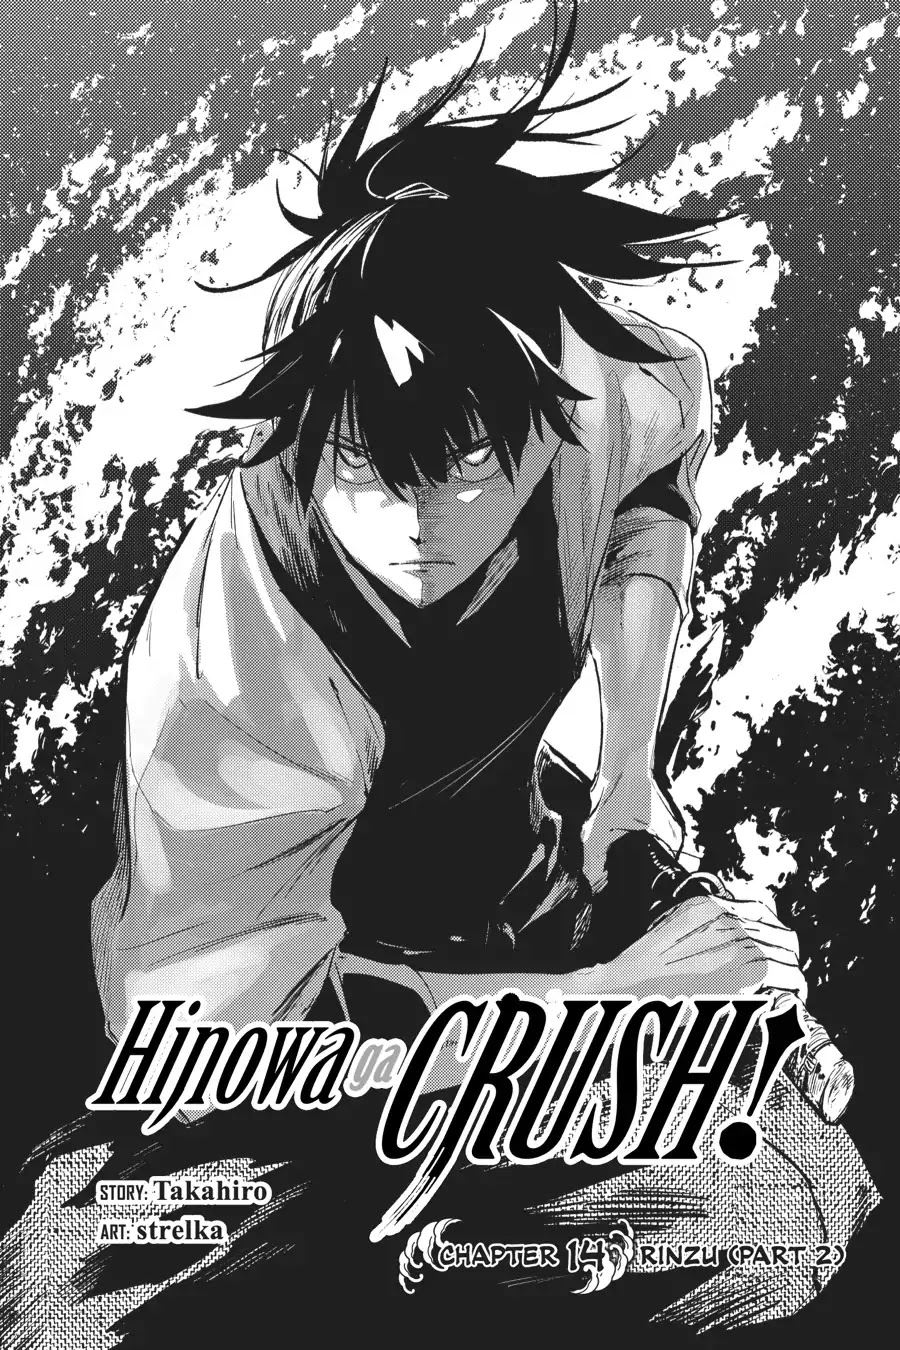 Hinowa ga CRUSH! Chapter 14